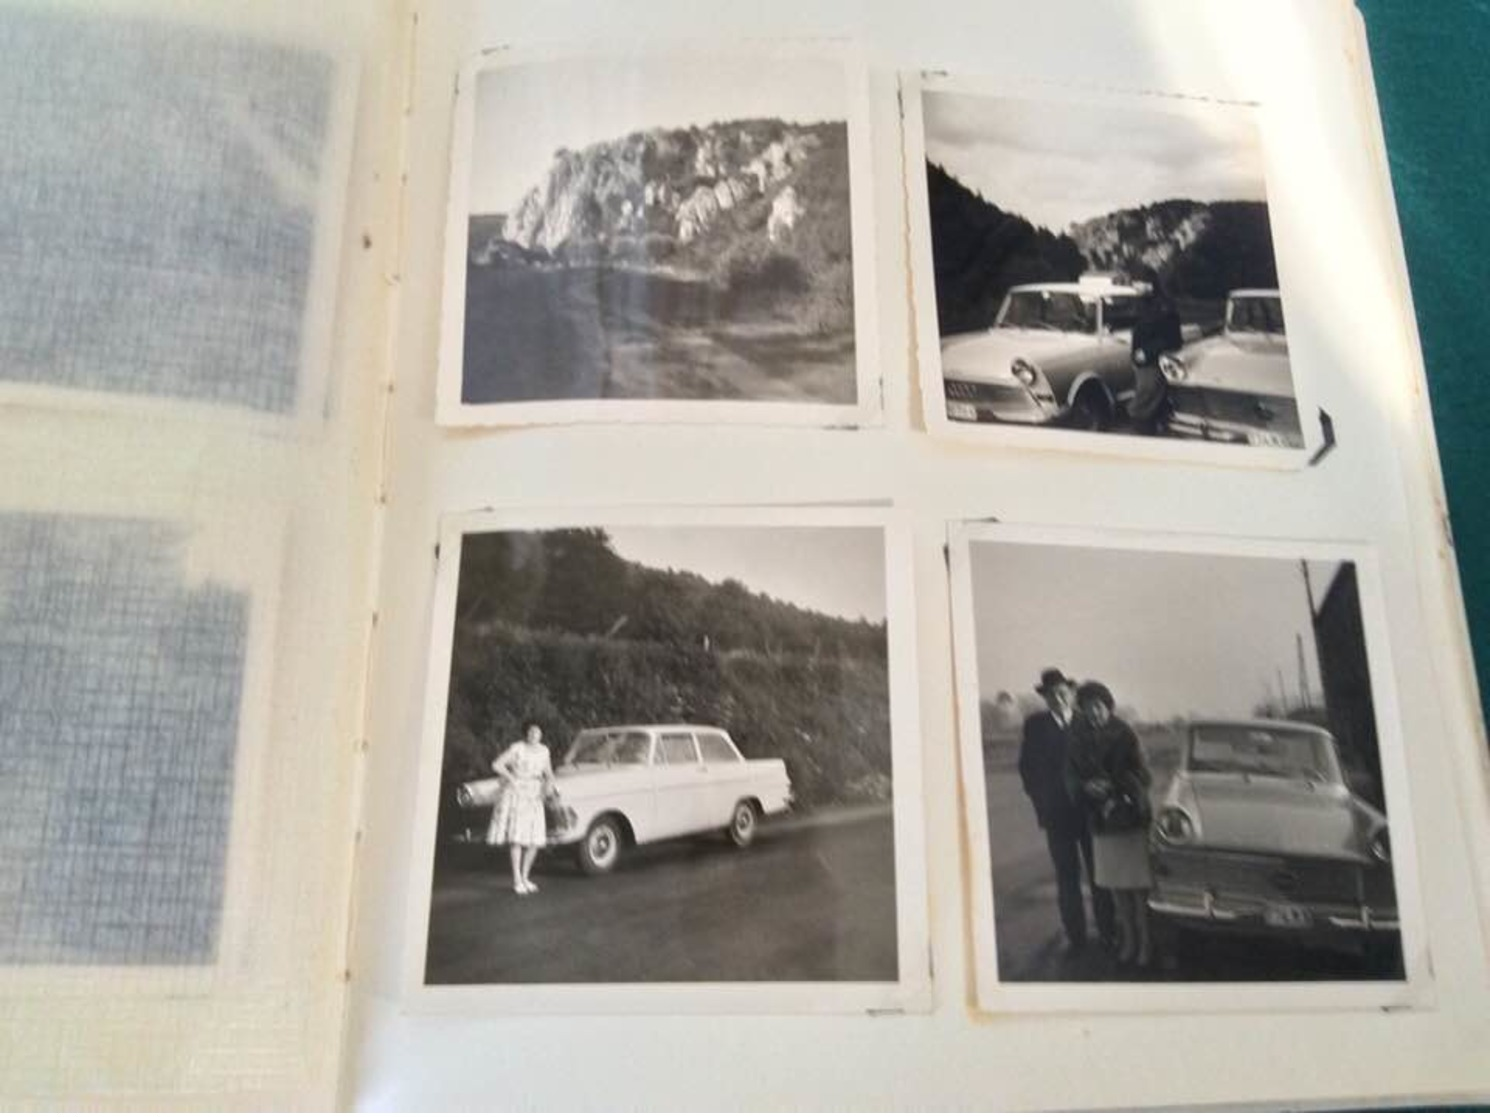 album photos-193 photos-années 60-famille-vacances-ecole-militaire-vacances-paris-plage-fete-voiture